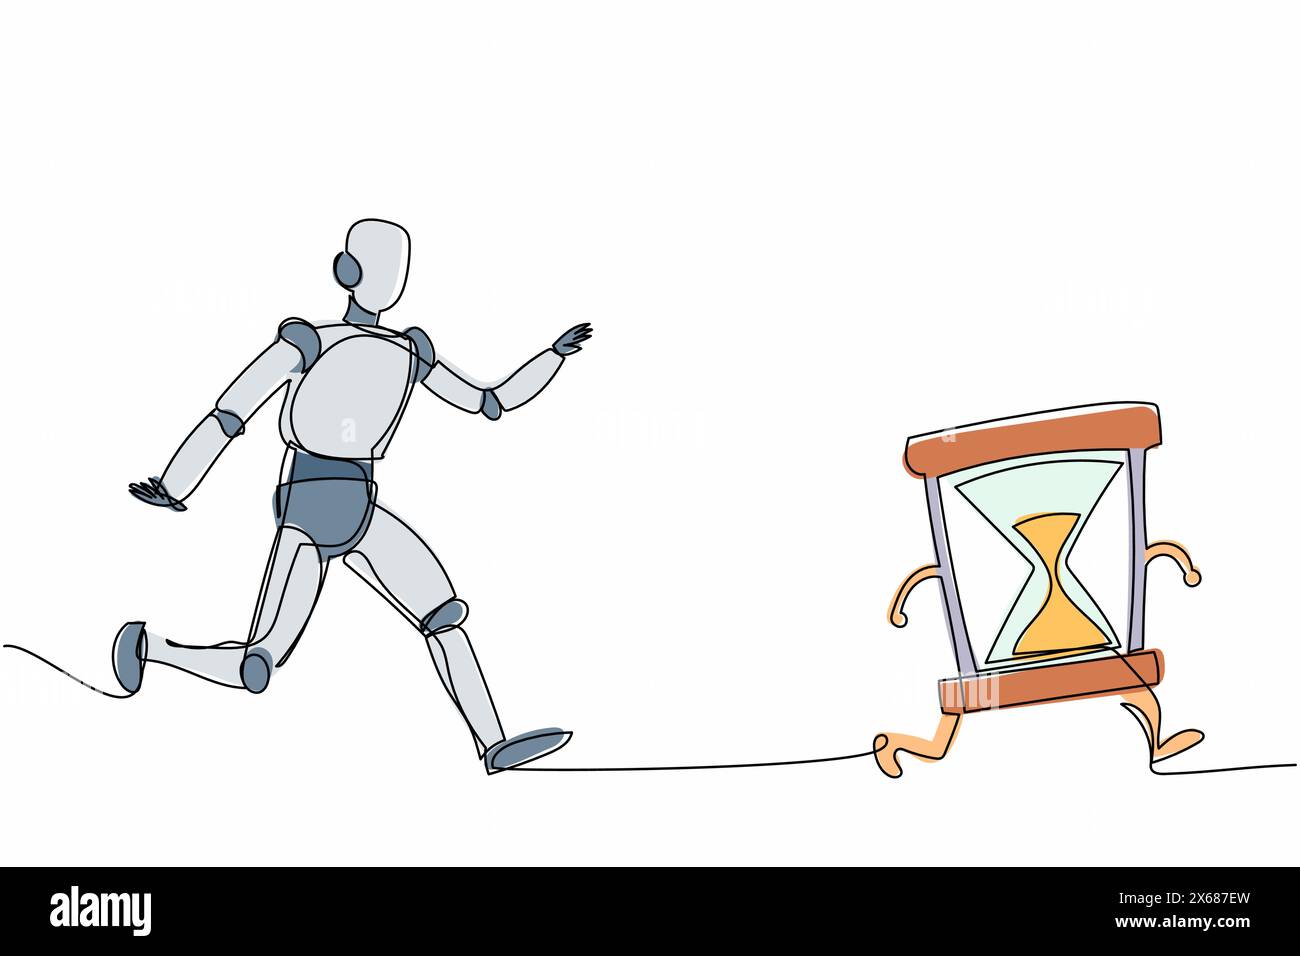 Roboter mit durchgehender einzeiliger Zeichnung, der Sanduhr nachjagt. Zeitmanagement und Betriebszeitplan der Fabrik. Humanoide Roboter-kybernetische Organismus-Entwicklung Stock Vektor